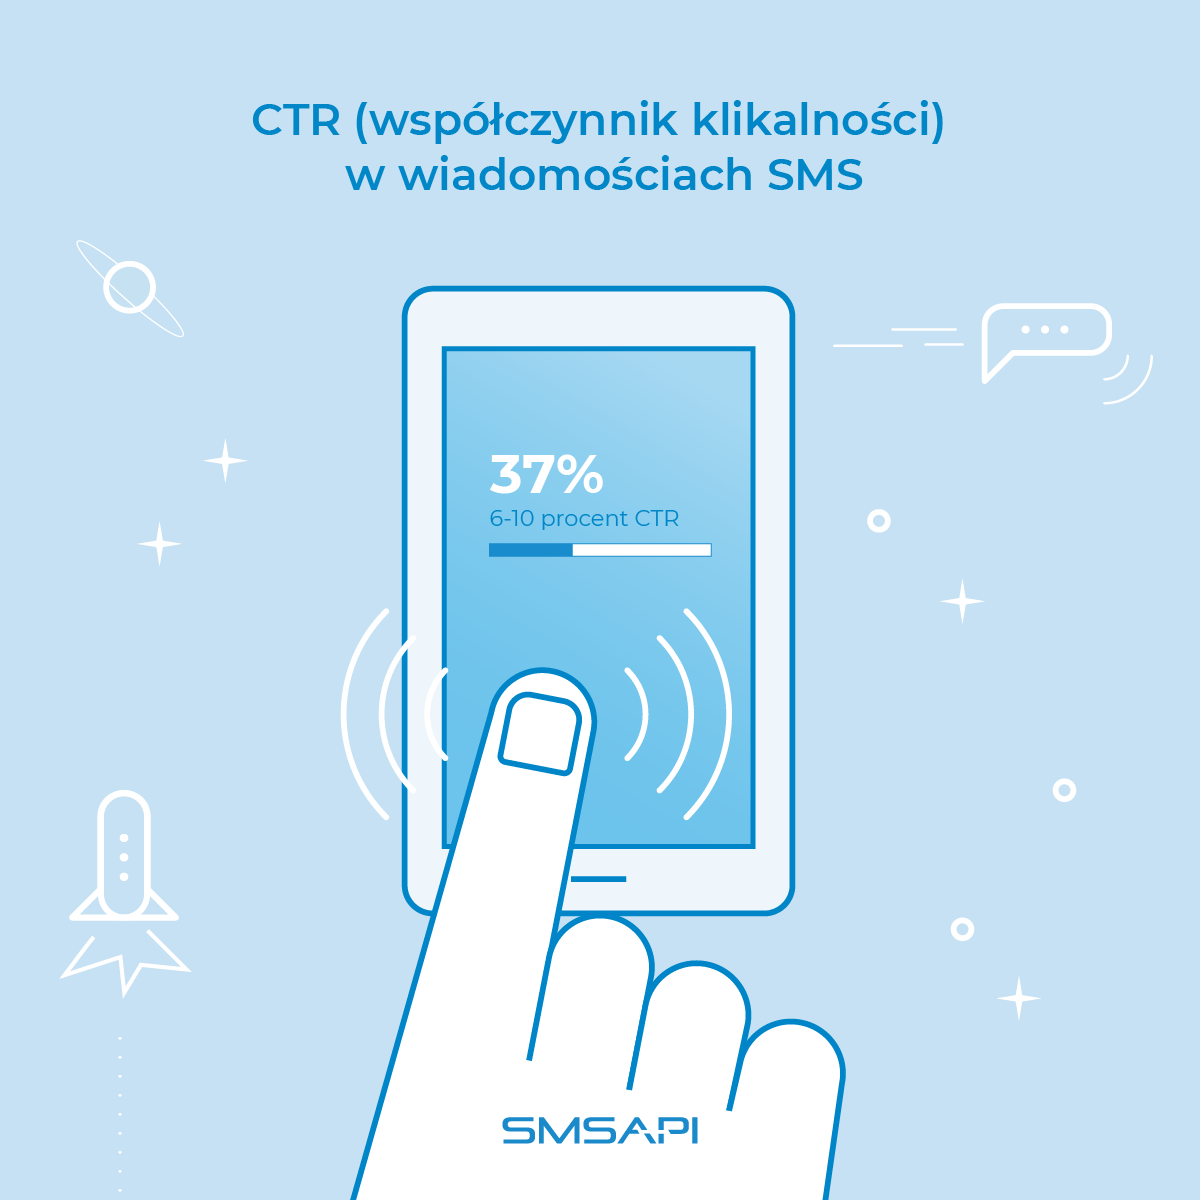 Według 37% firm linki w SMS mają CTR na poziomie 6-10%